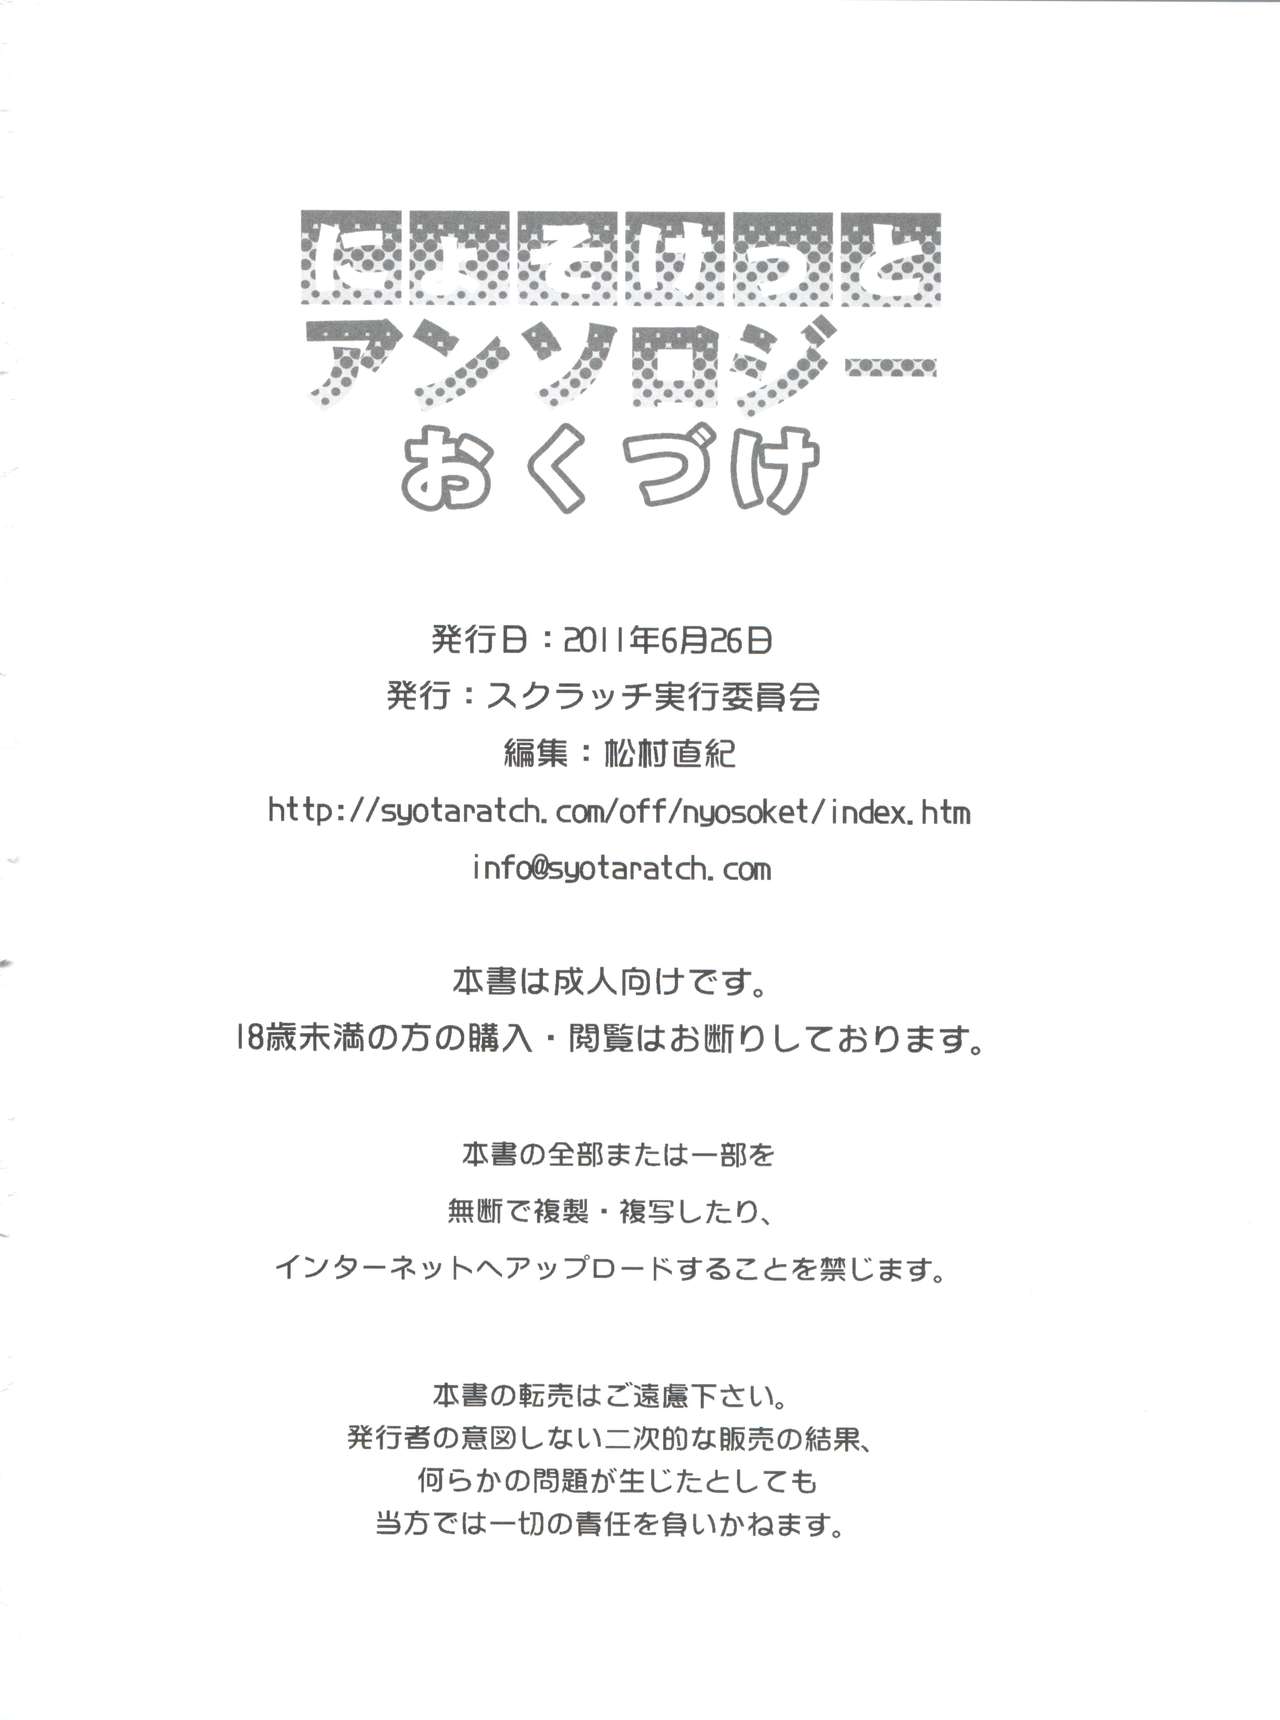 (Nyosoket!) [Scratch Jikkou Iinkai (Various)] Nyosoket Anthology page 38 full